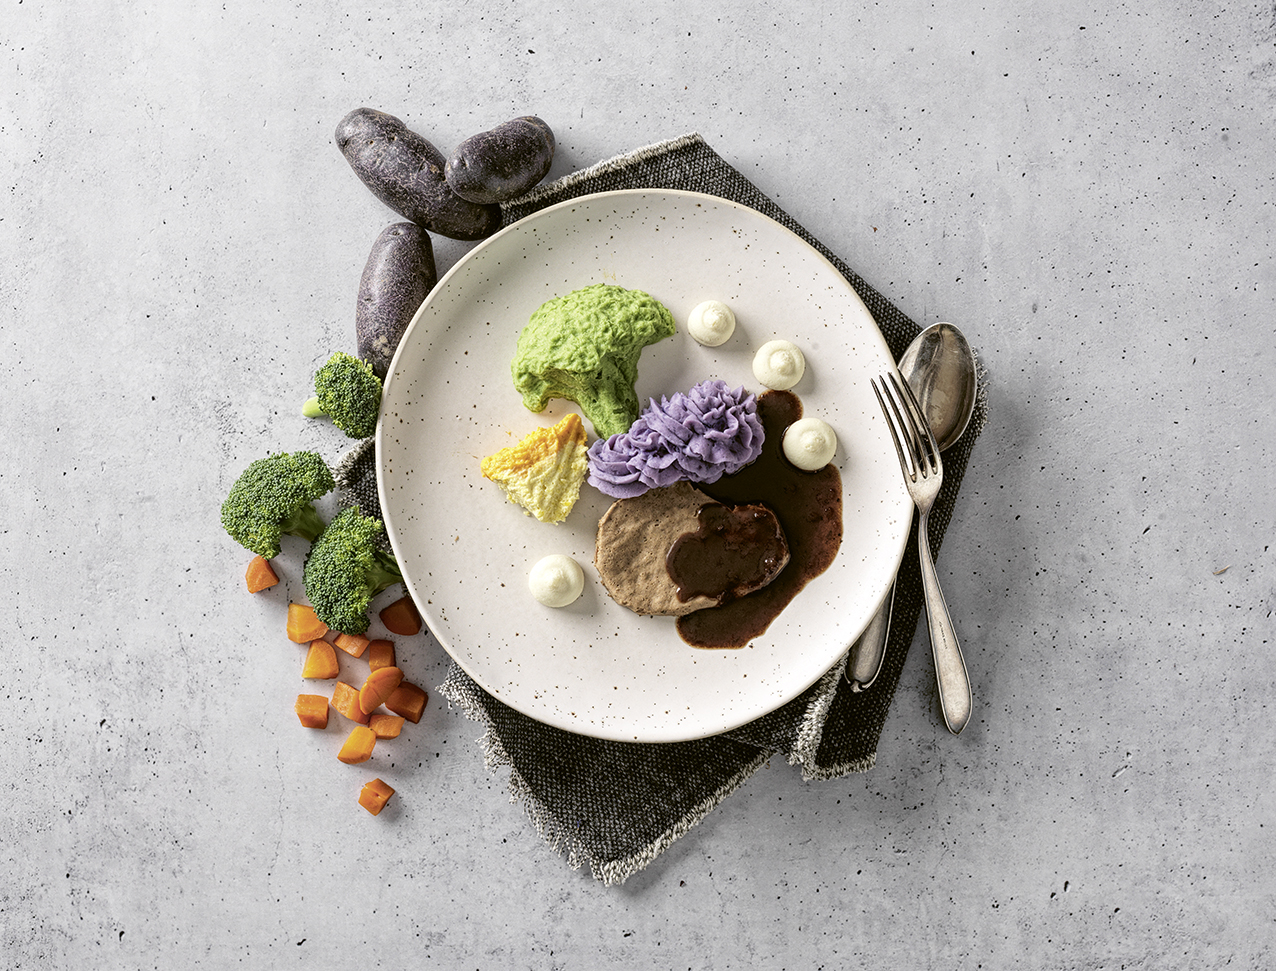 Einfach, hochwertig und lecker: Dieses Smoothfood-Gericht von Küchenchef Markus Kappler lässt sich in jeder Heimküche nachkochen.